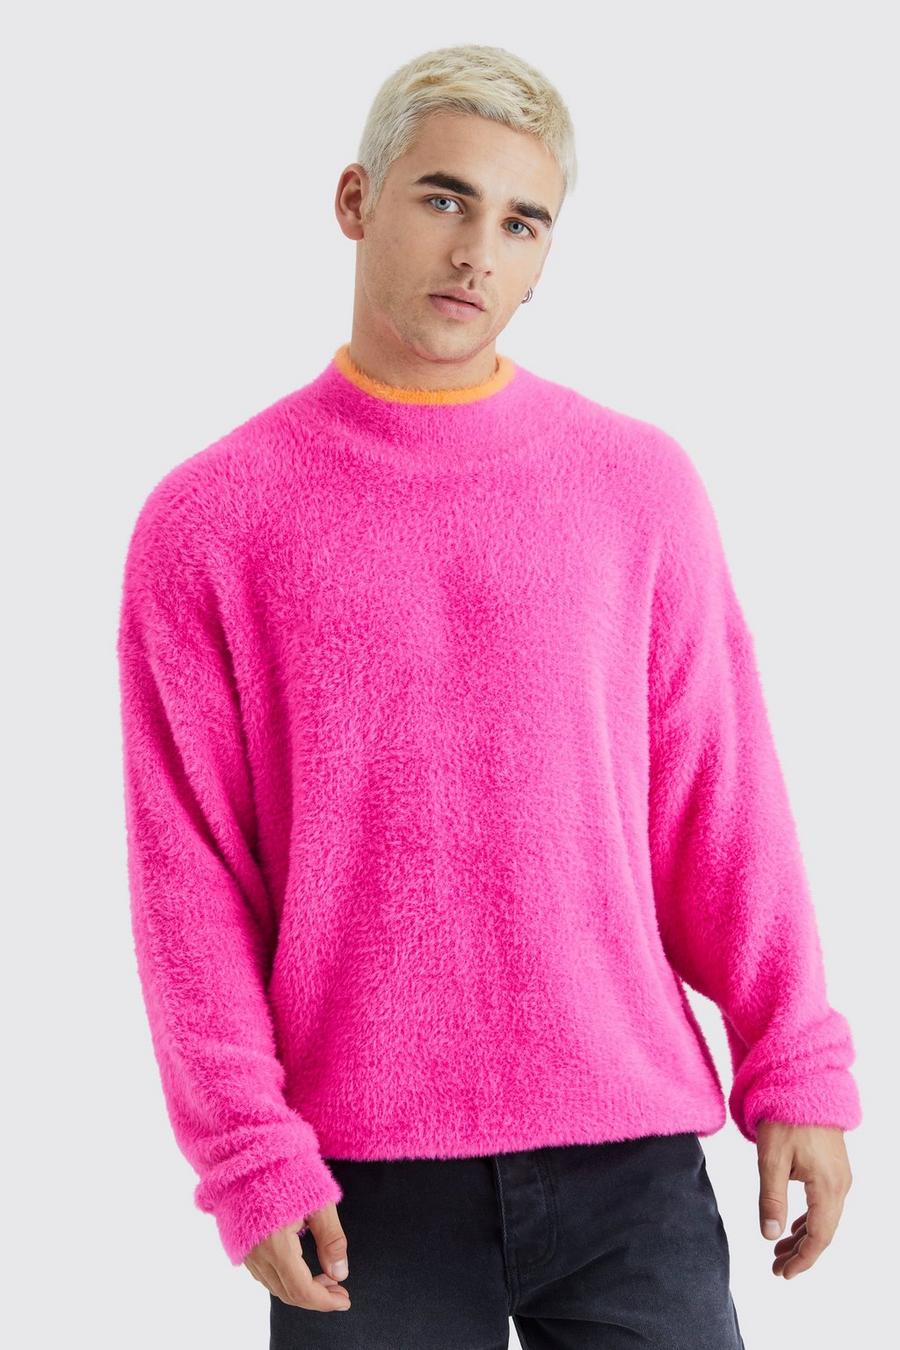 Flauschiger Oversize Pullover mit Trichterkragen, Hot pink